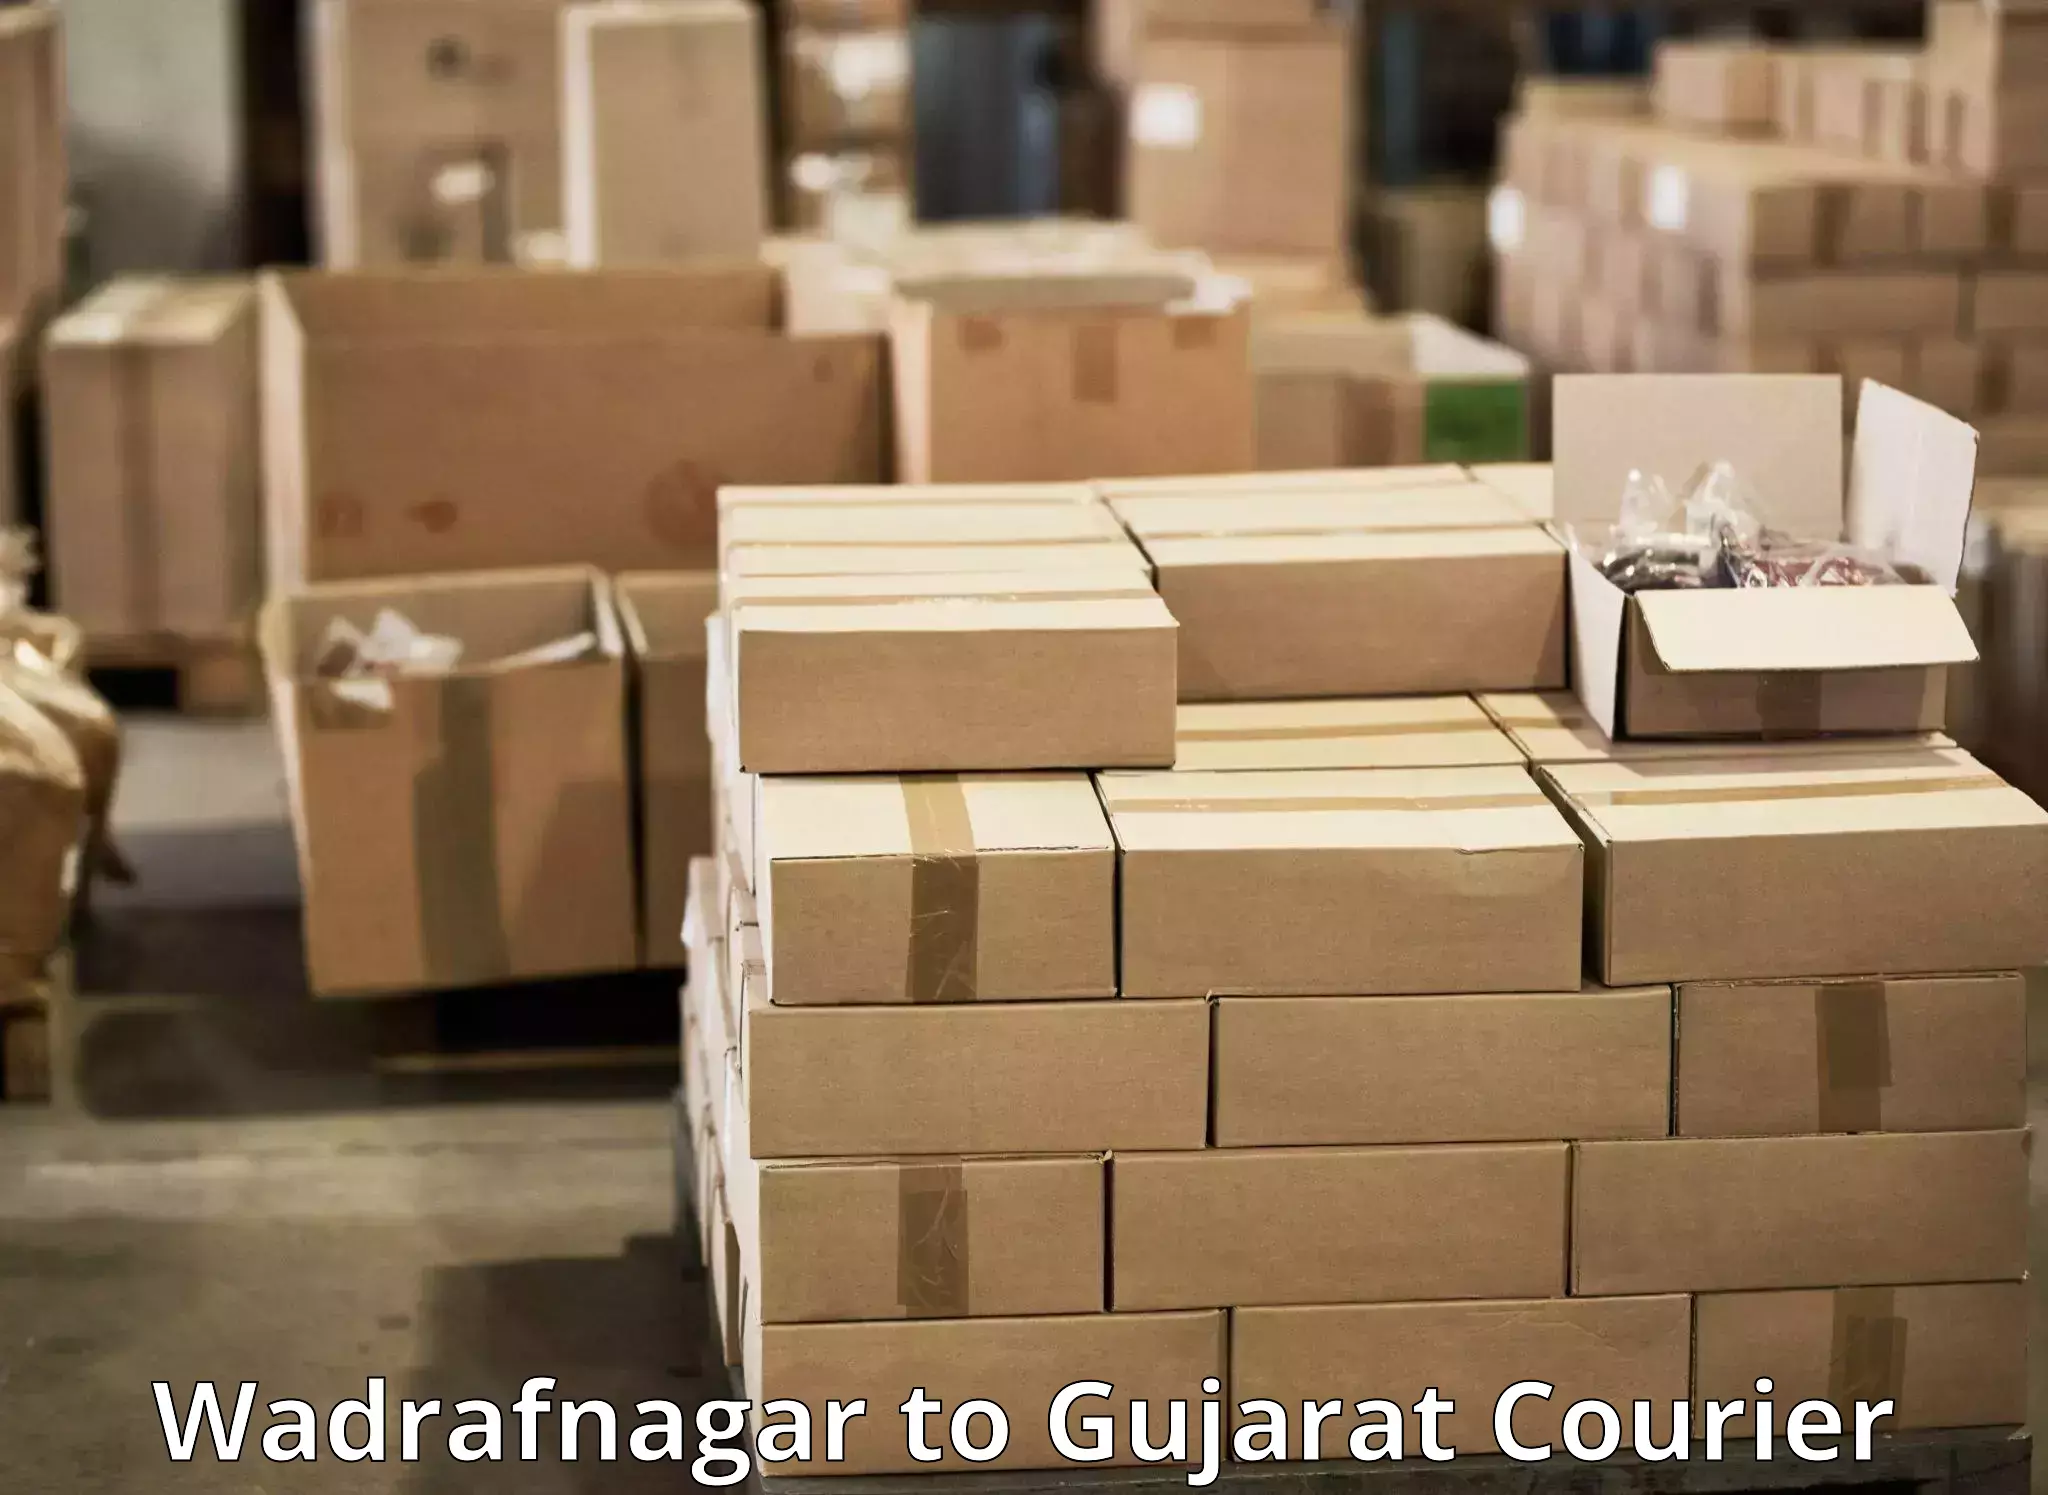 24-hour courier service Wadrafnagar to Gujarat